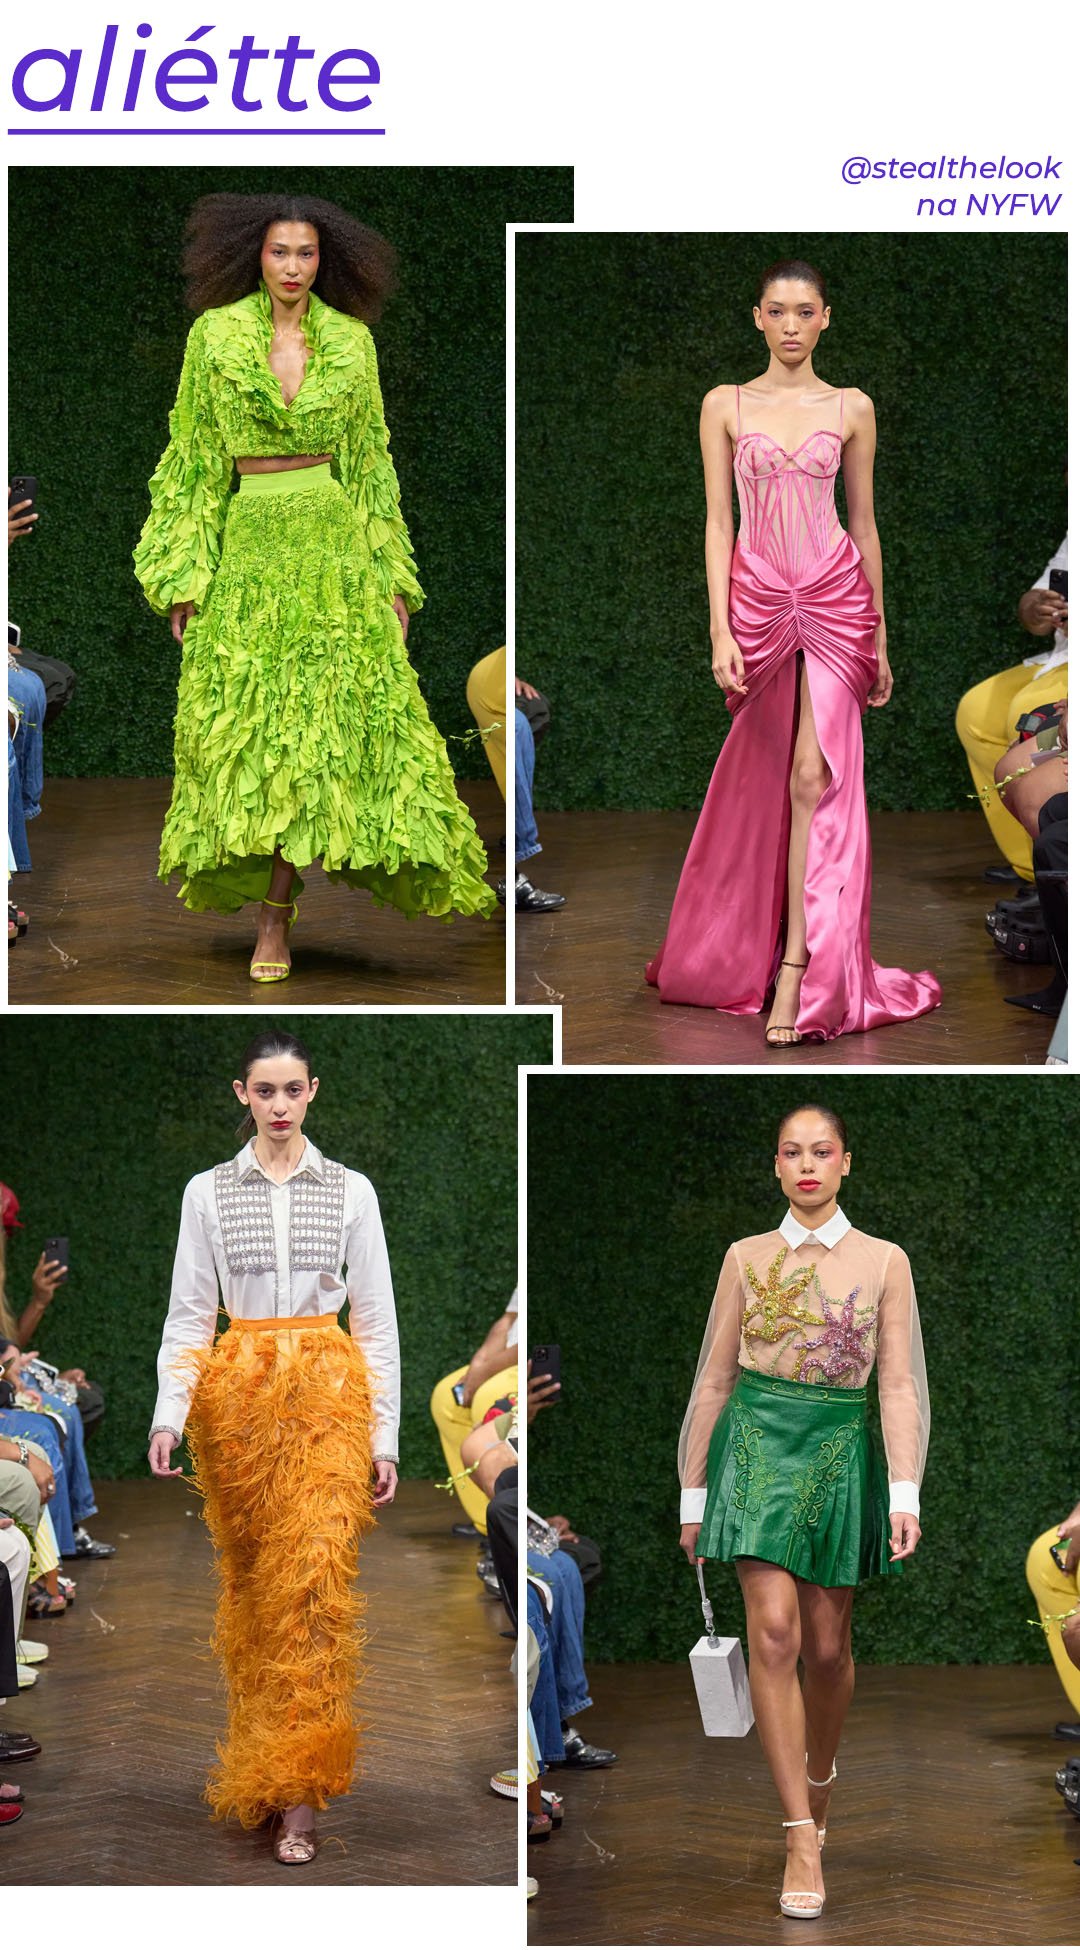 Aliétte - roupas diversas - NYFW - Primavera - modelo andando pela passarela - https://stealthelook.com.br